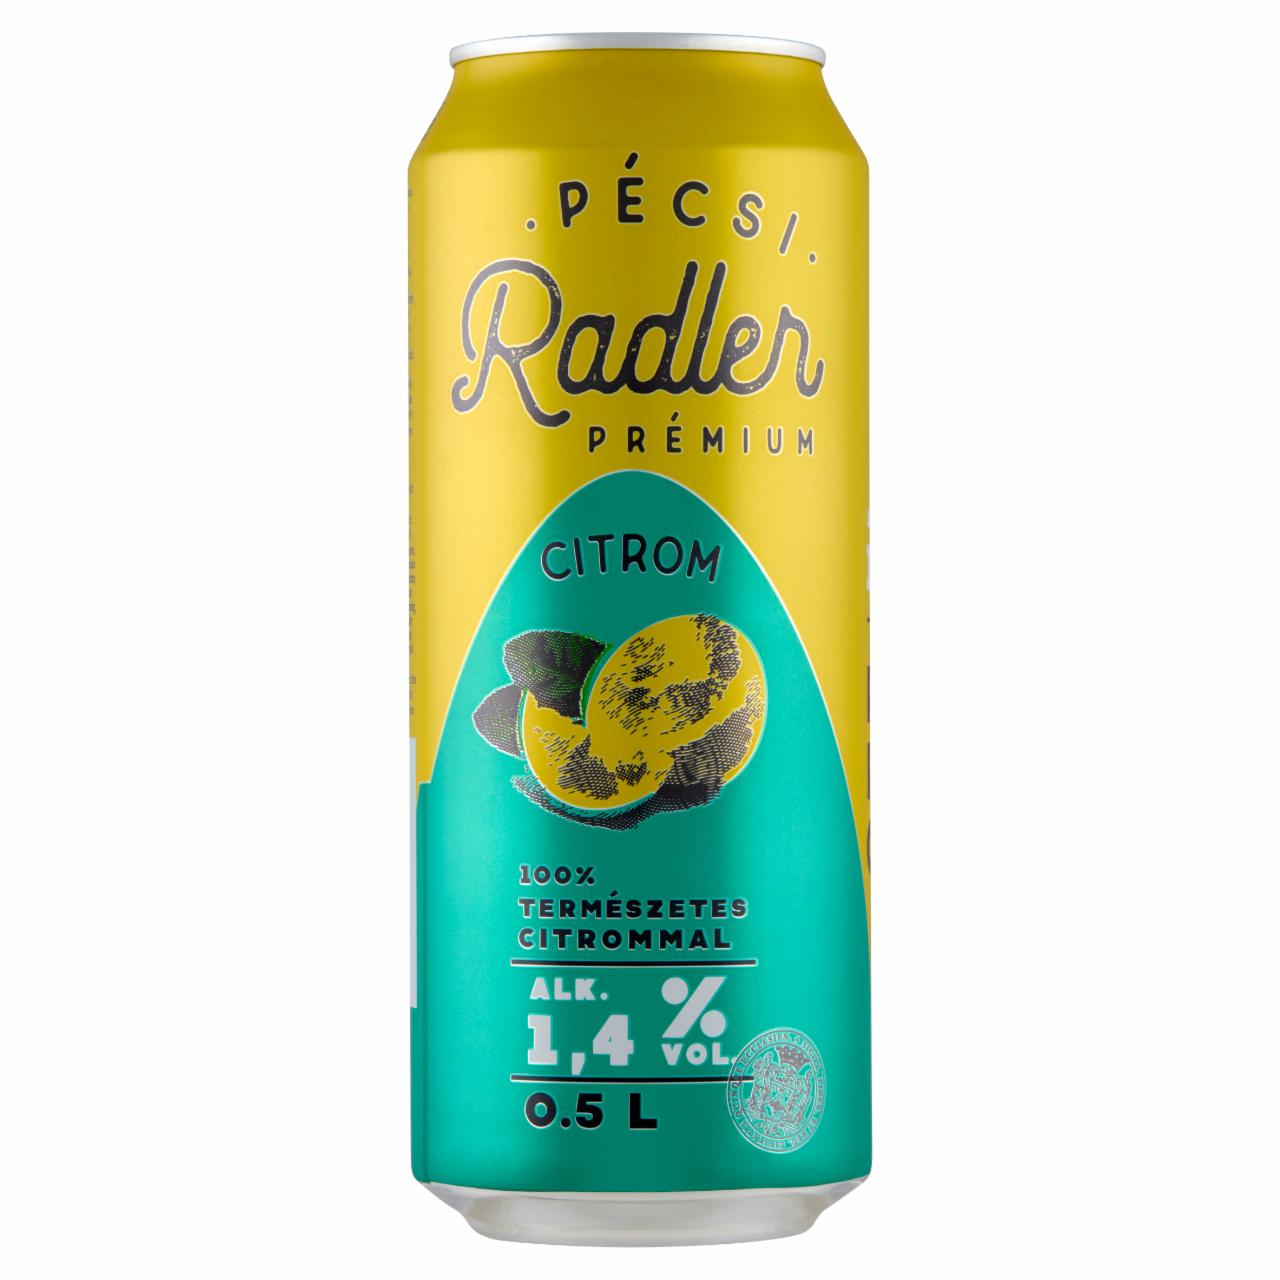 Képek - Pécsi Radler Prémium Citrom világos sör és citrom ízű szénsavas üdítőital keverék 1,4% 0,5 l